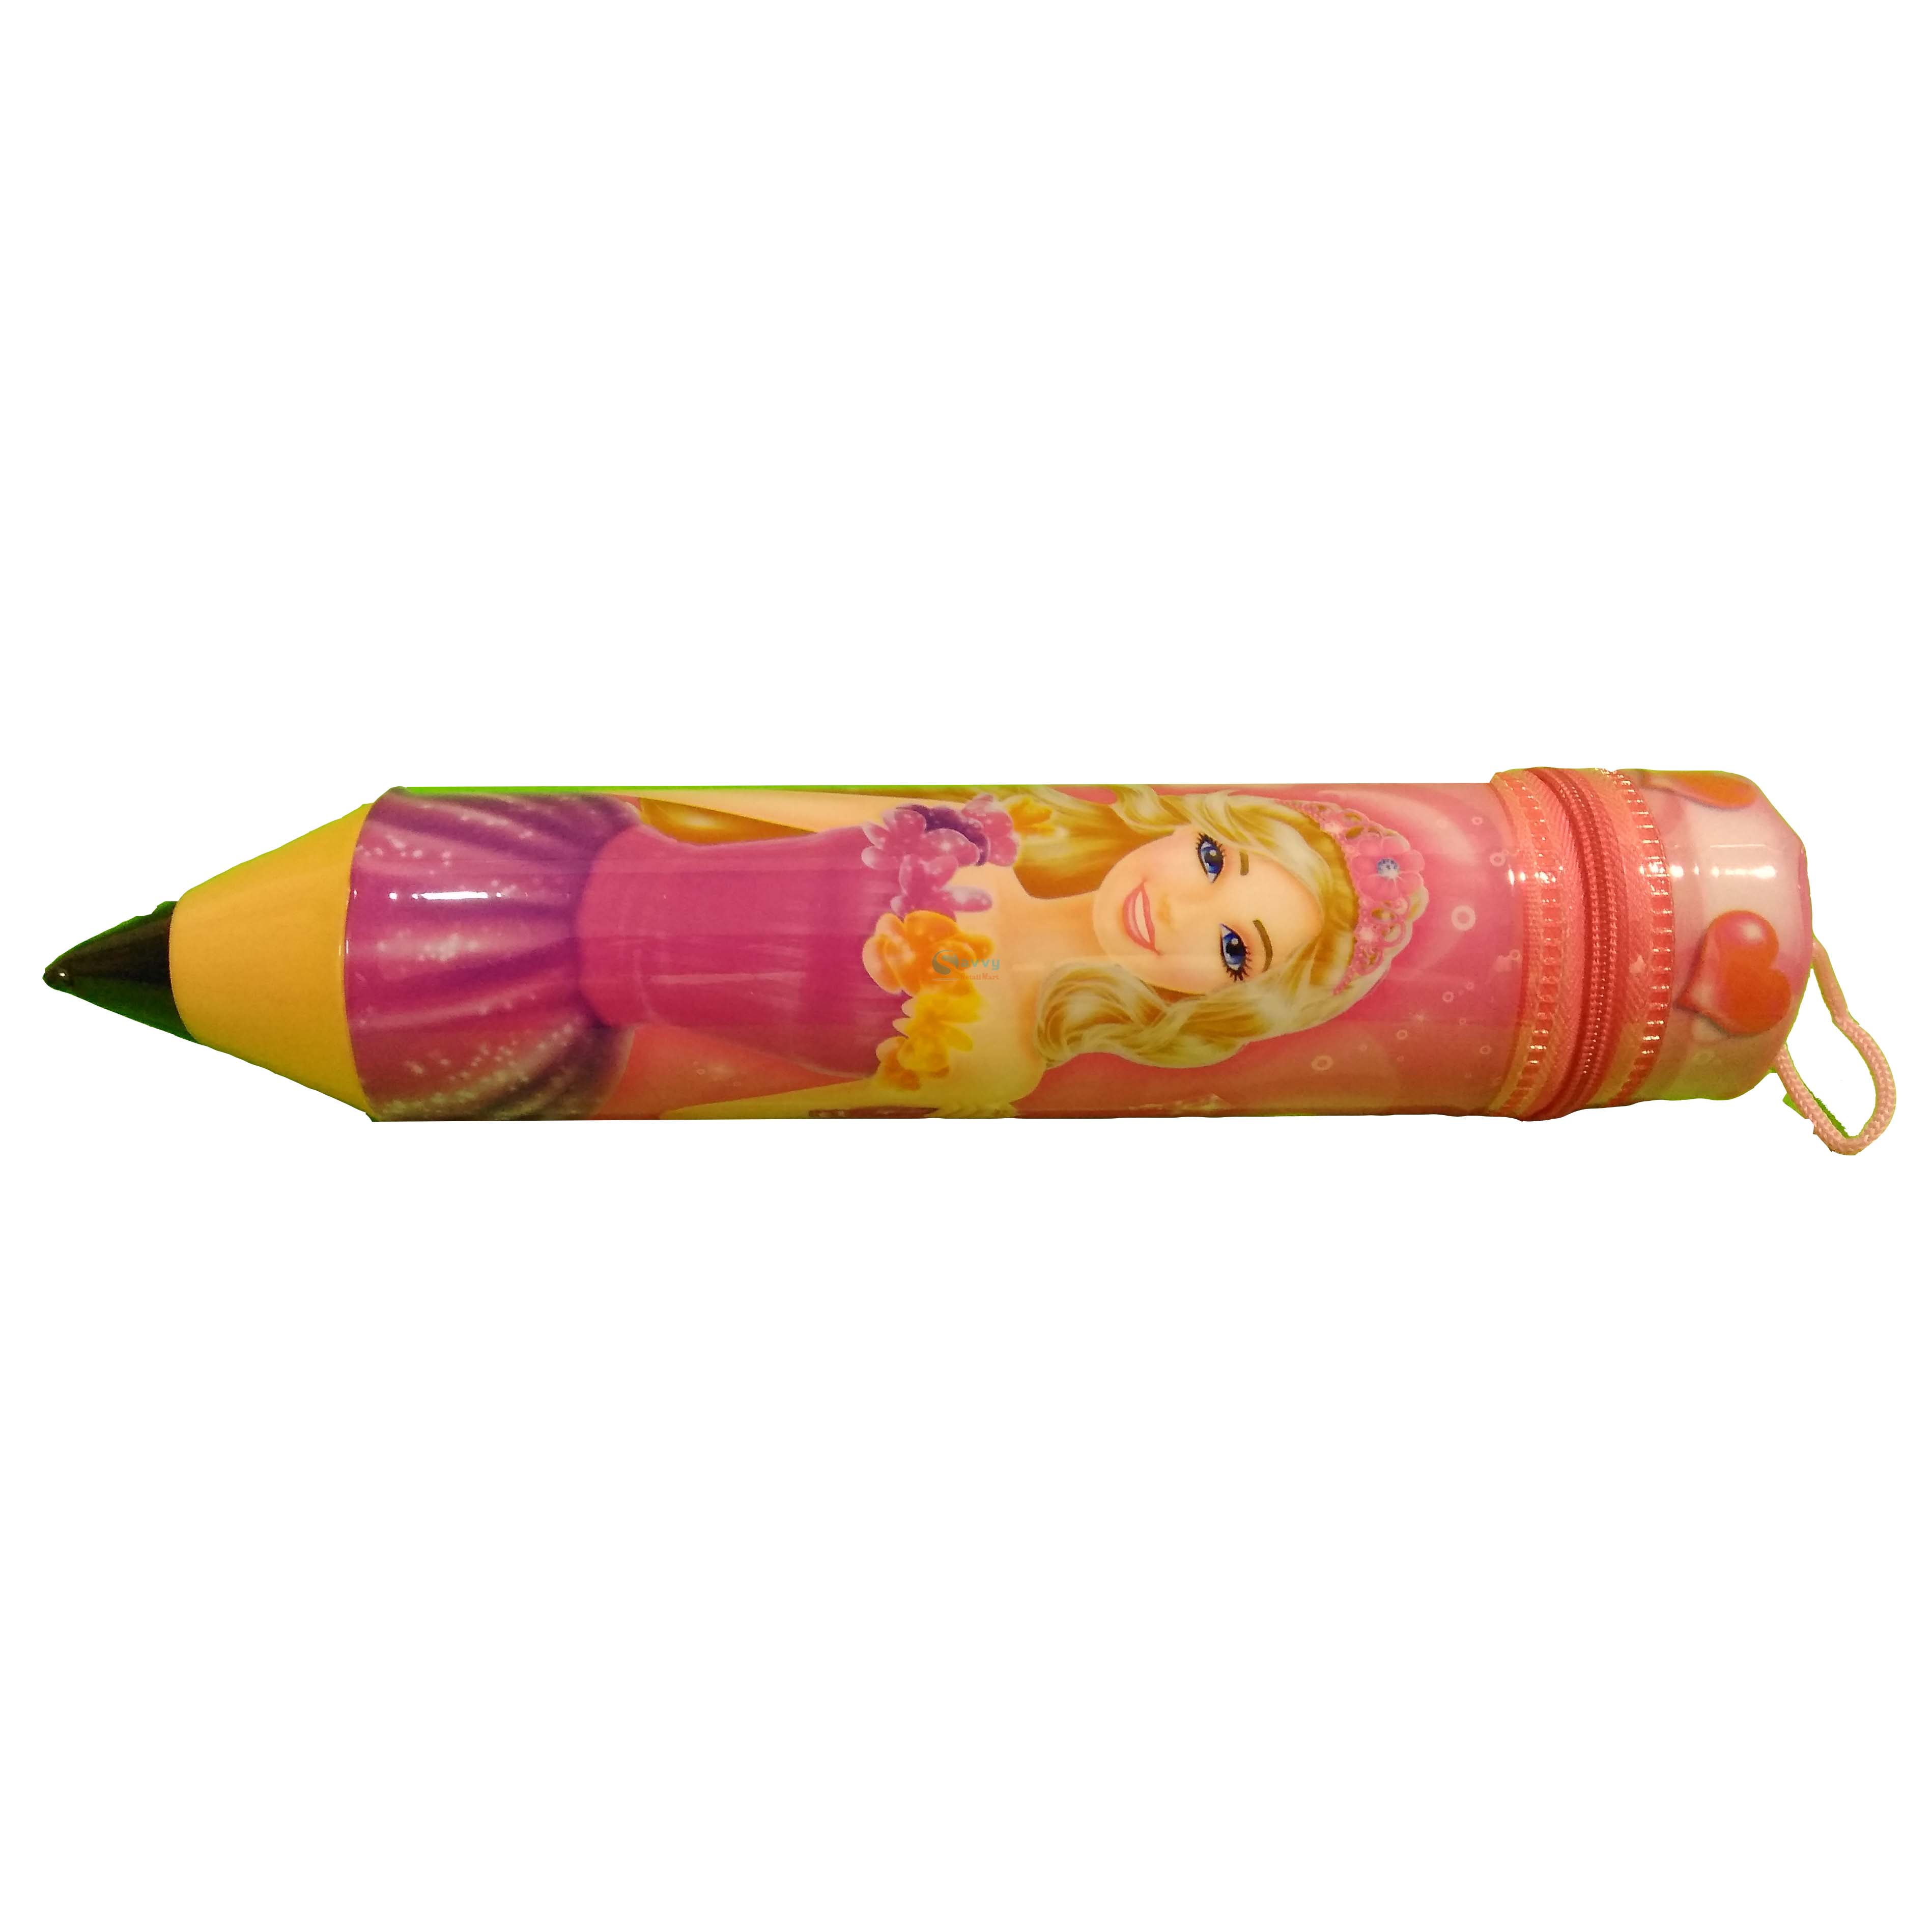 Pencil Shape Pencil Box For Kids SRS5158 - Barbie